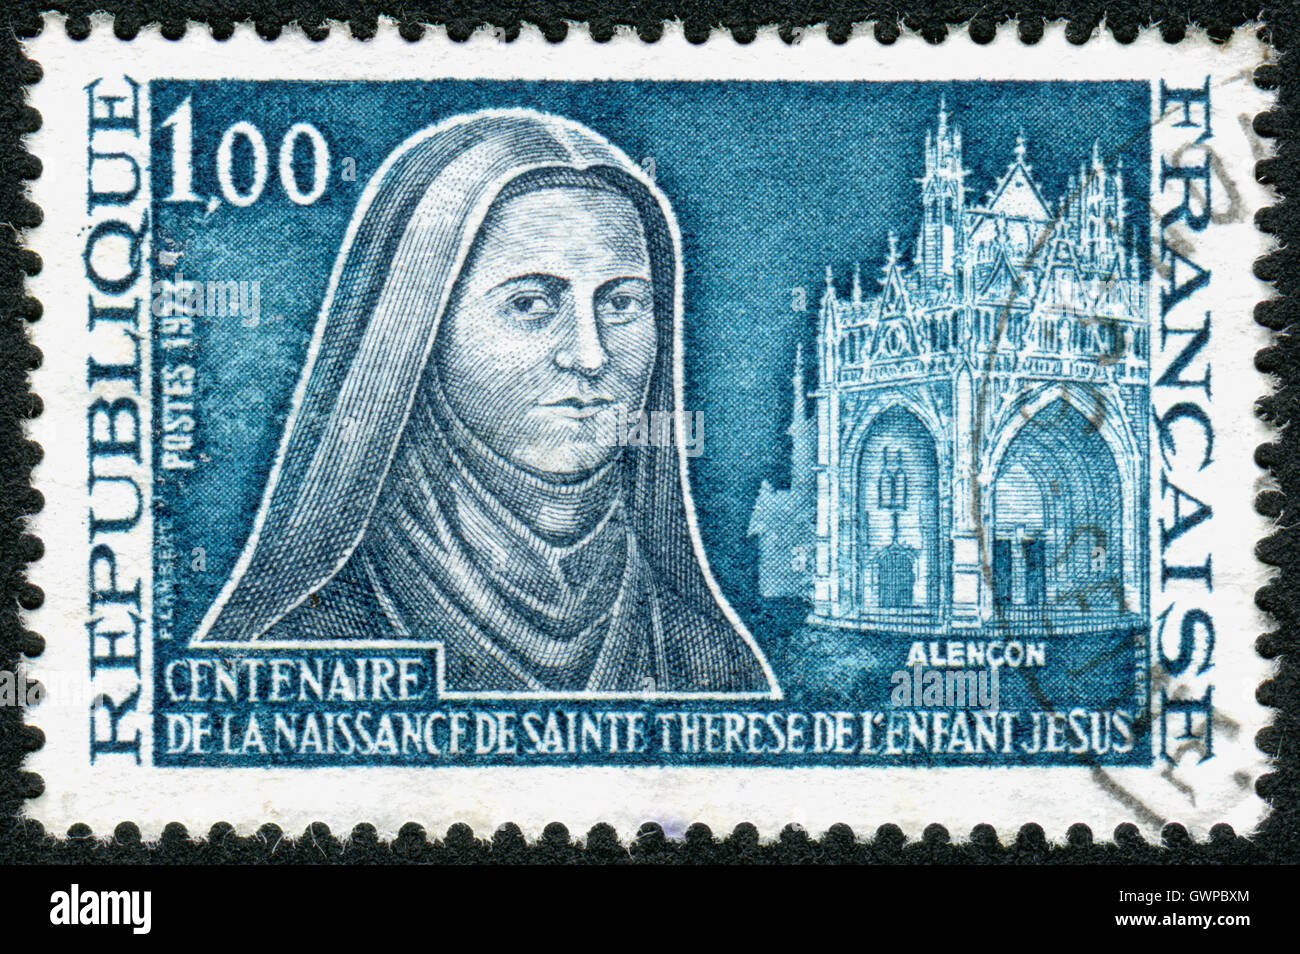 Francobollo stampato in Francia, dedicato al centenario della nascita di Santa Teresa di Lisieux, il piccolo fiore, monaca carmelitana. Foto Stock